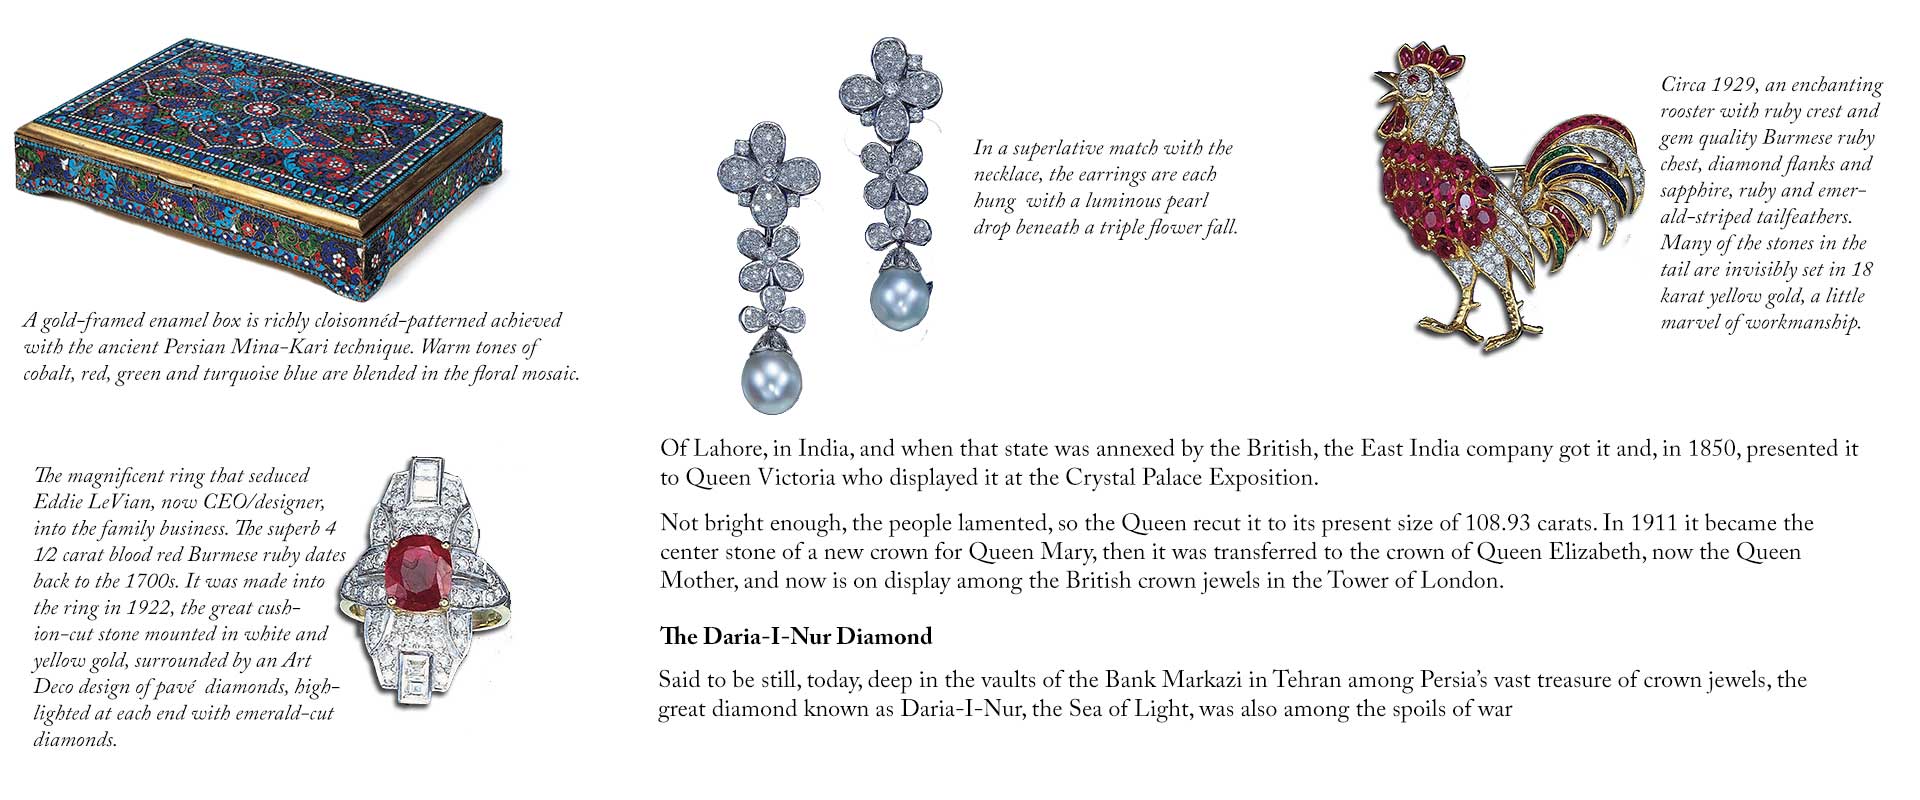 The Daria-I-Nur Diamond